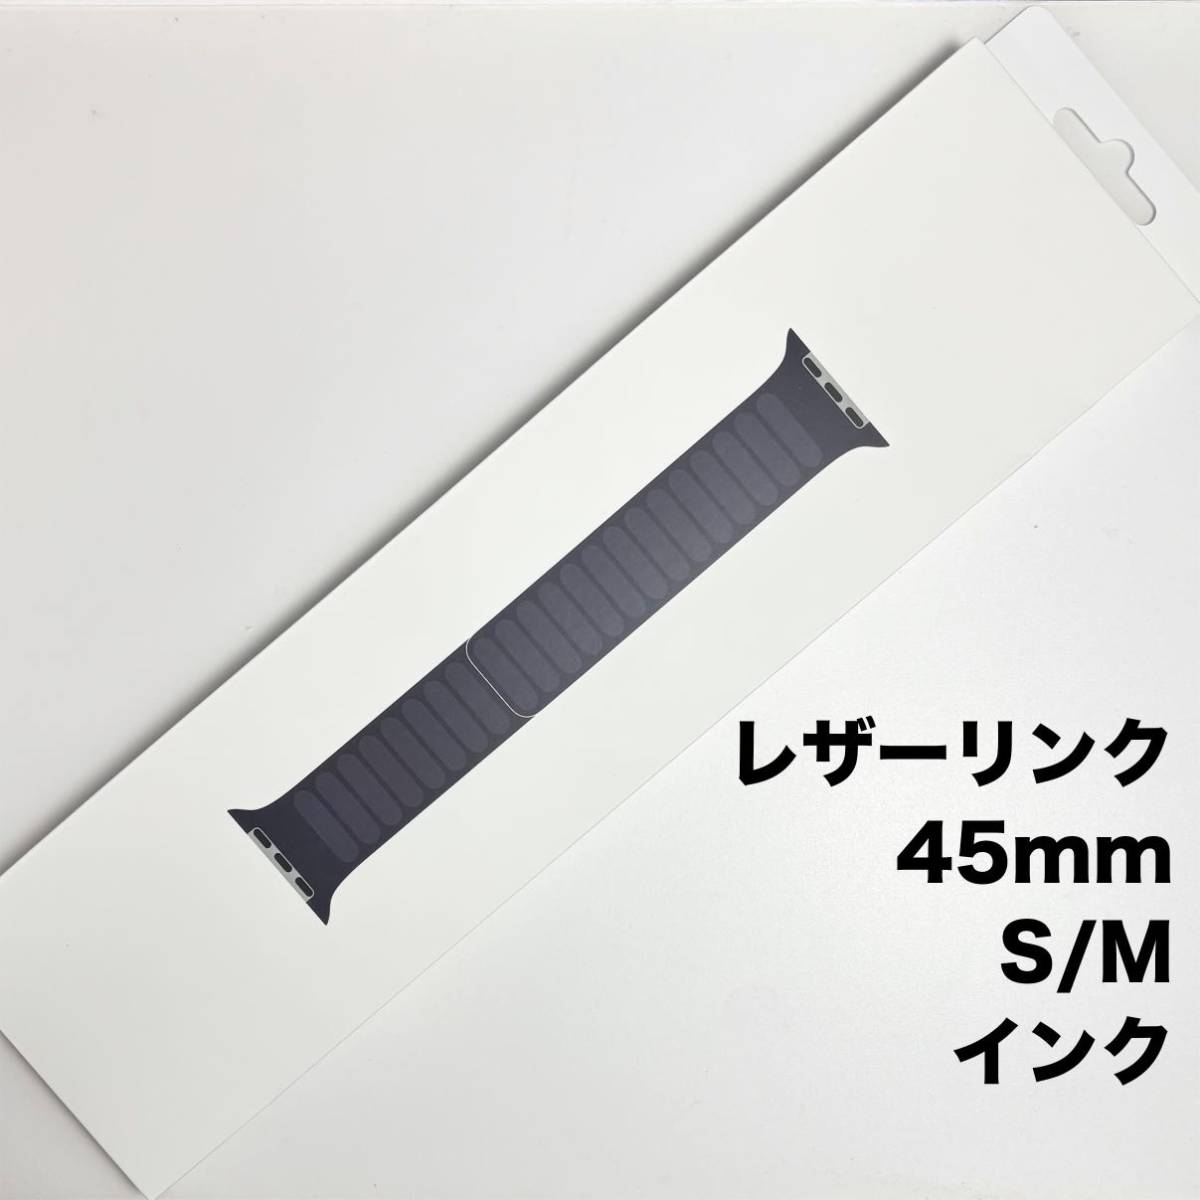 【SALE】アップル純正 アップルウォッチバンド レザーリンク マグネット式 45mm S/M サイズ インク_画像1